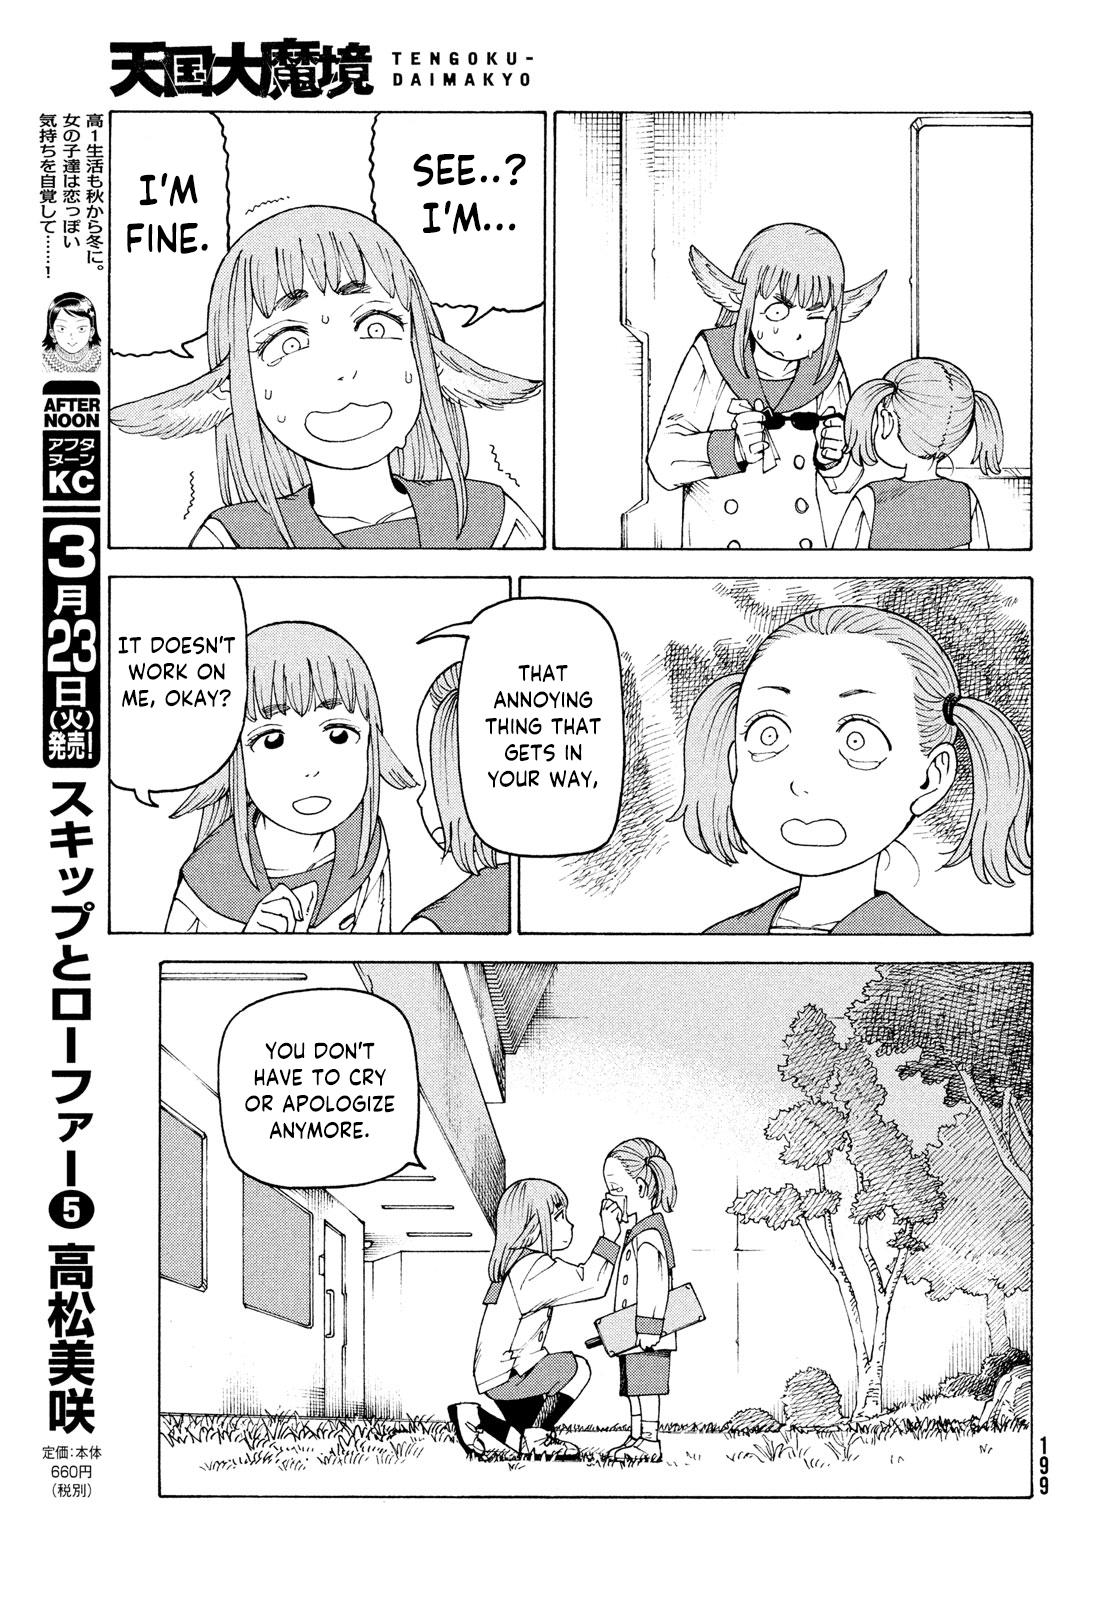 Tengoku Daimakyou Chapter 34: Inazaki Robin ➂ page 15 - Mangakakalot